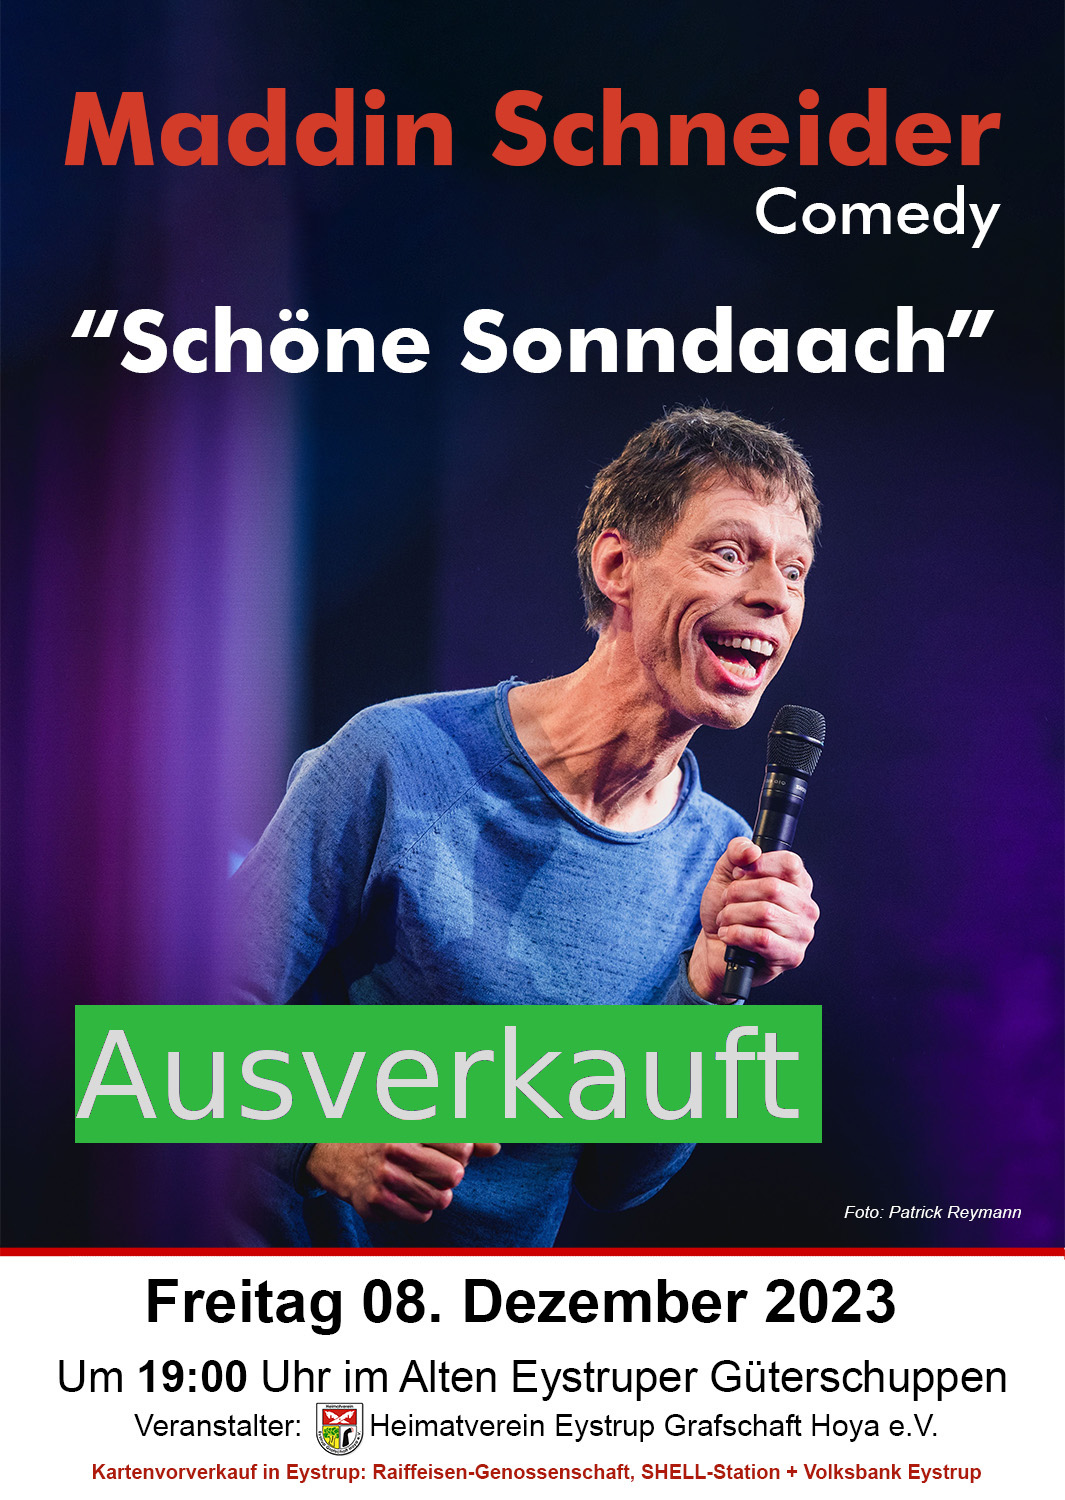 Maddin Schneider: "Schöne Sonndaach"